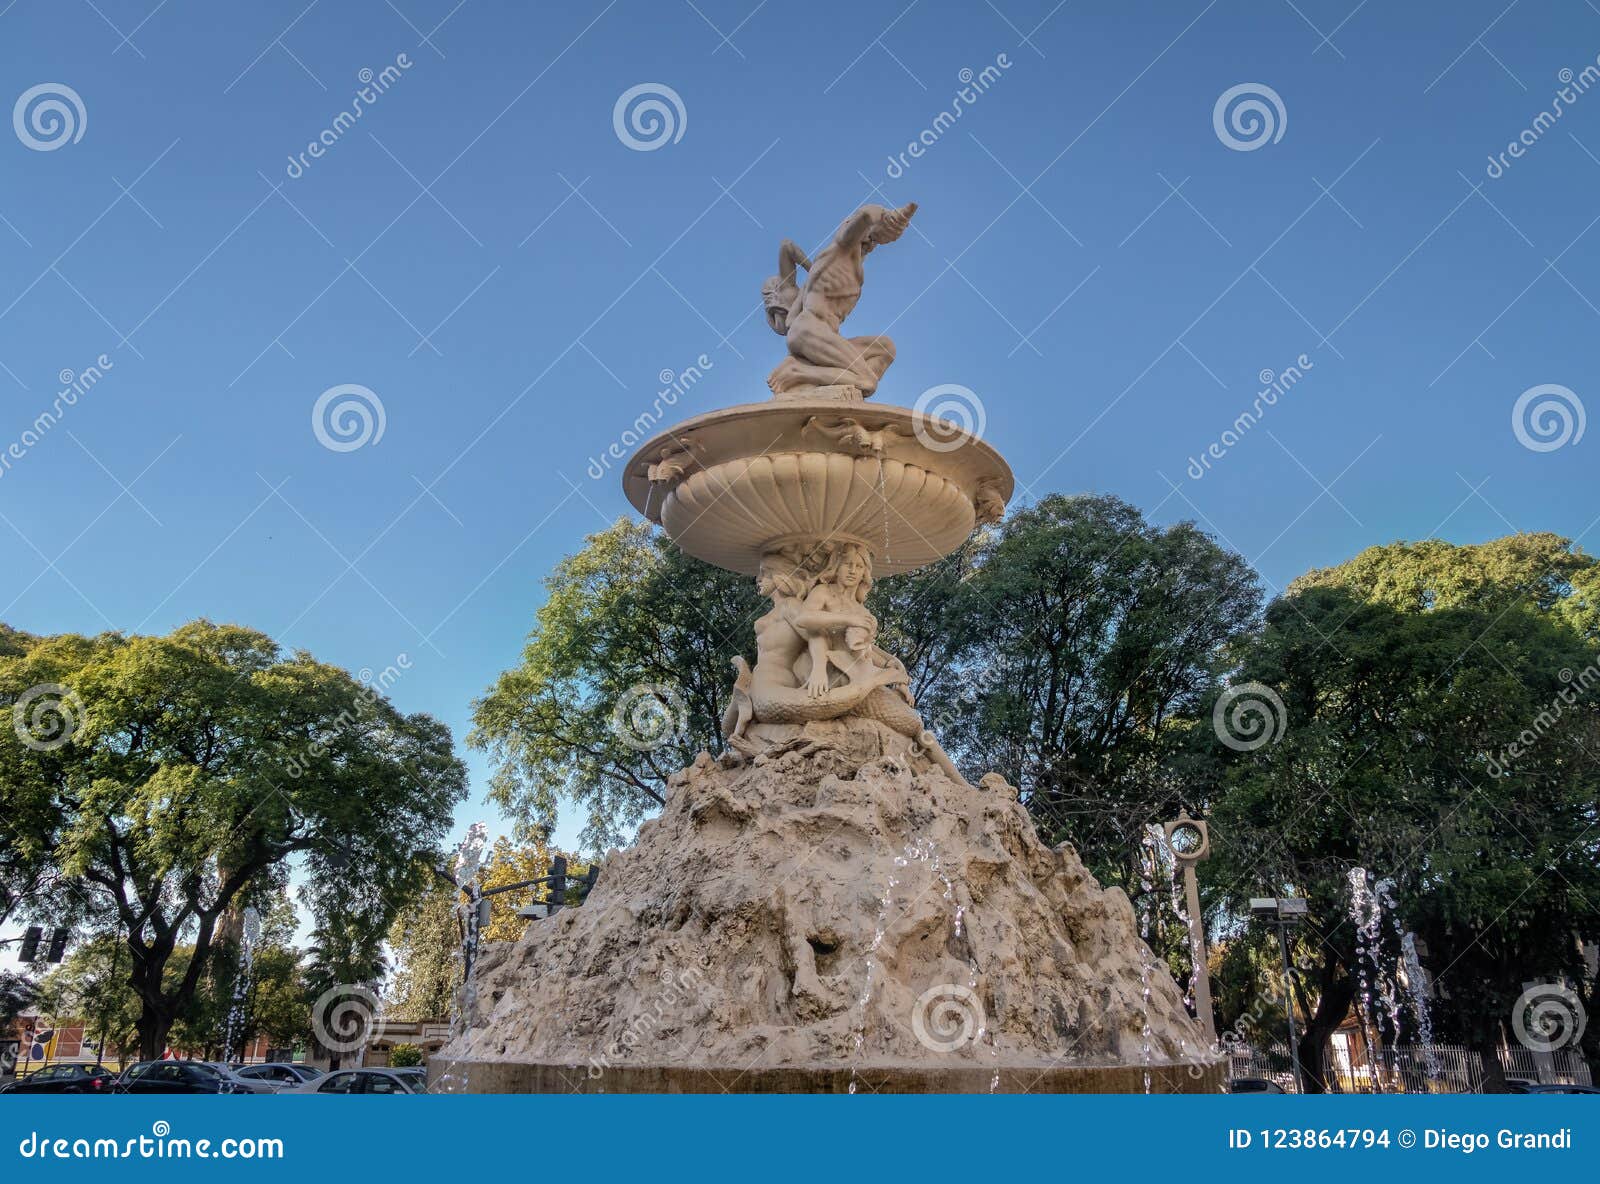 fuente de las utopias fountain - rosario, santa fe, argentina